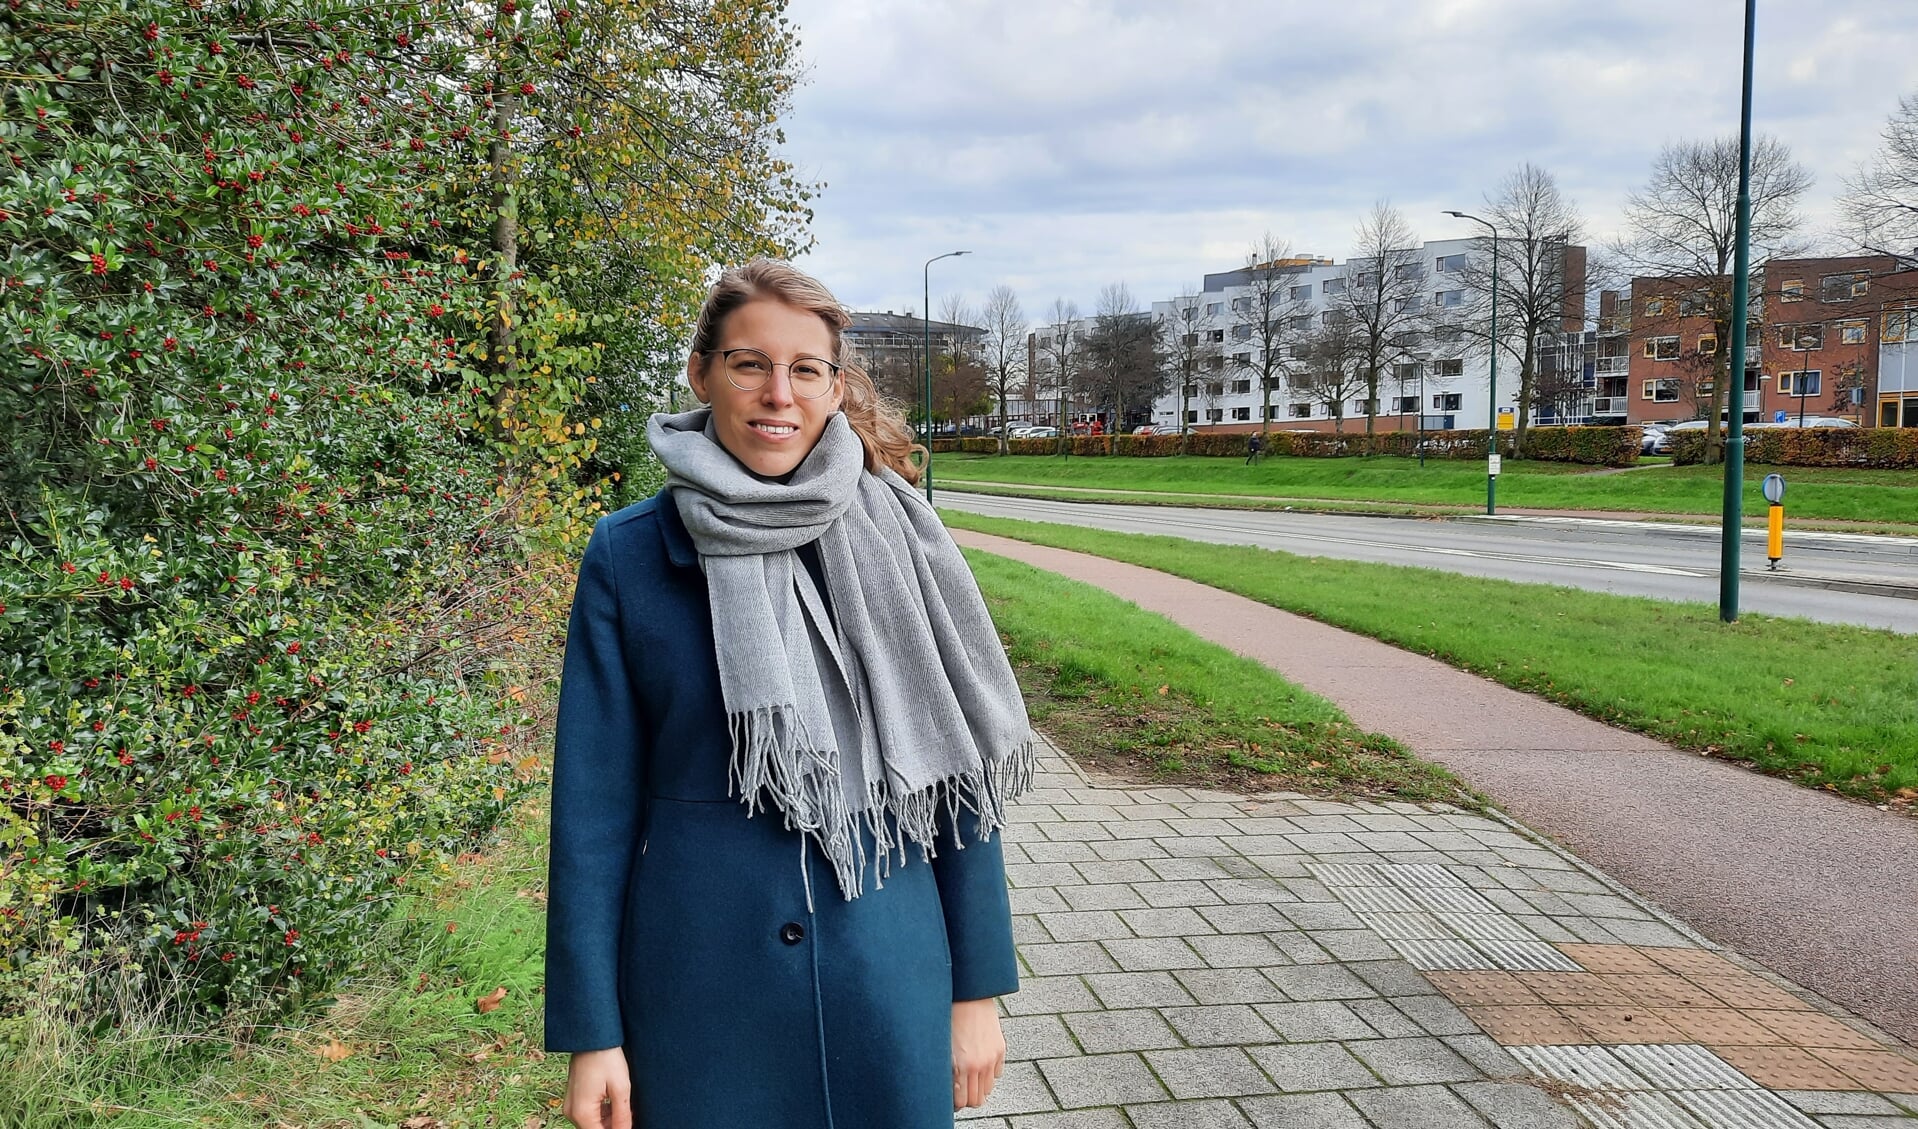 Juliët Holtschlag is als studente op onderzoek uit in haar nieuwe woonplaats Soest.